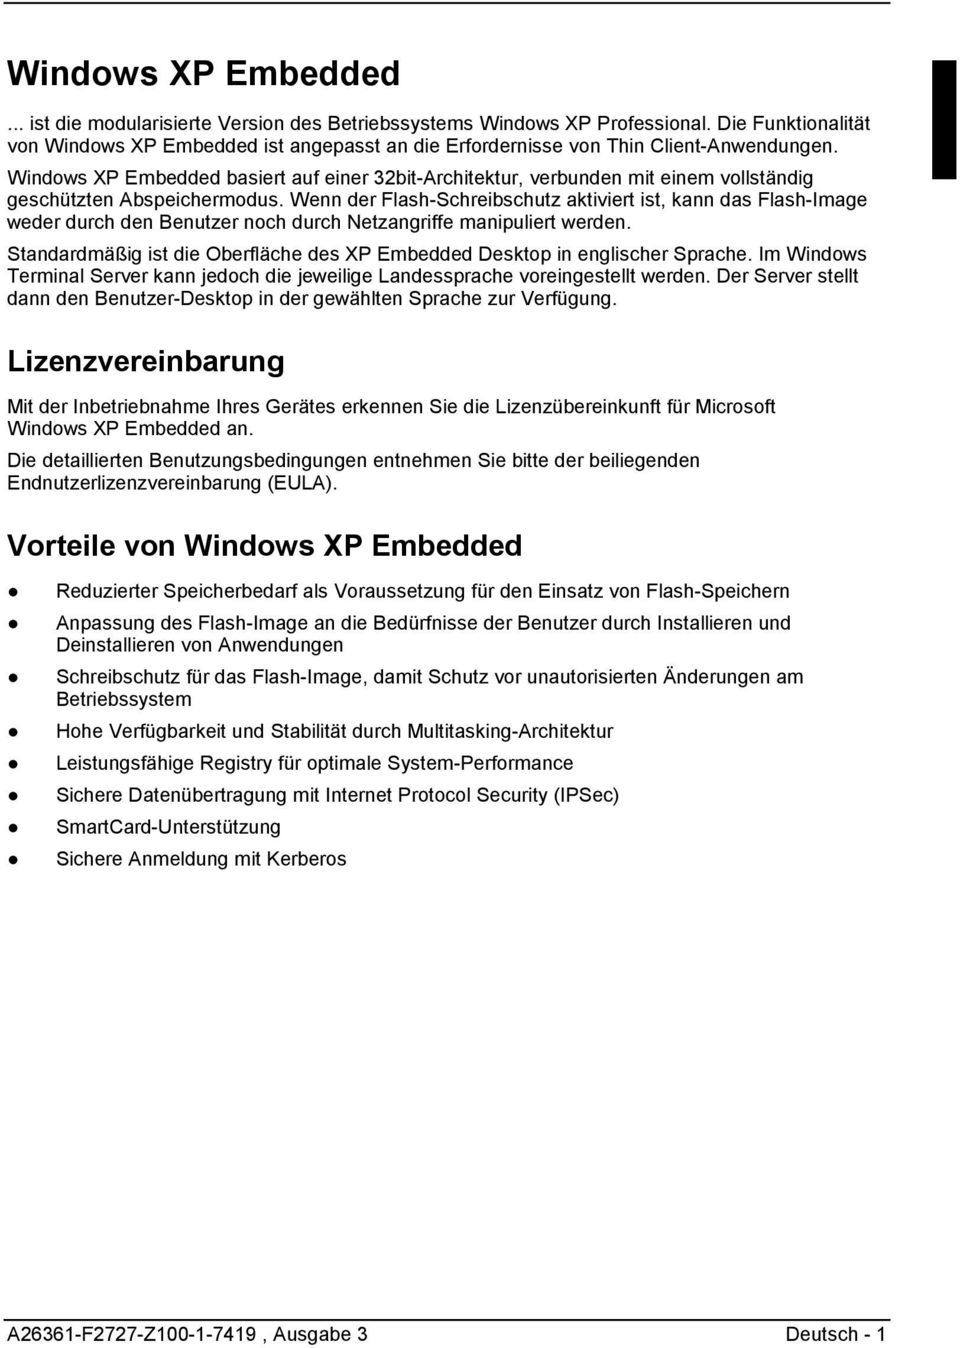 Windows XP Embedded basiert auf einer 32bit-Architektur, verbunden mit einem vollständig geschützten Abspeichermodus.